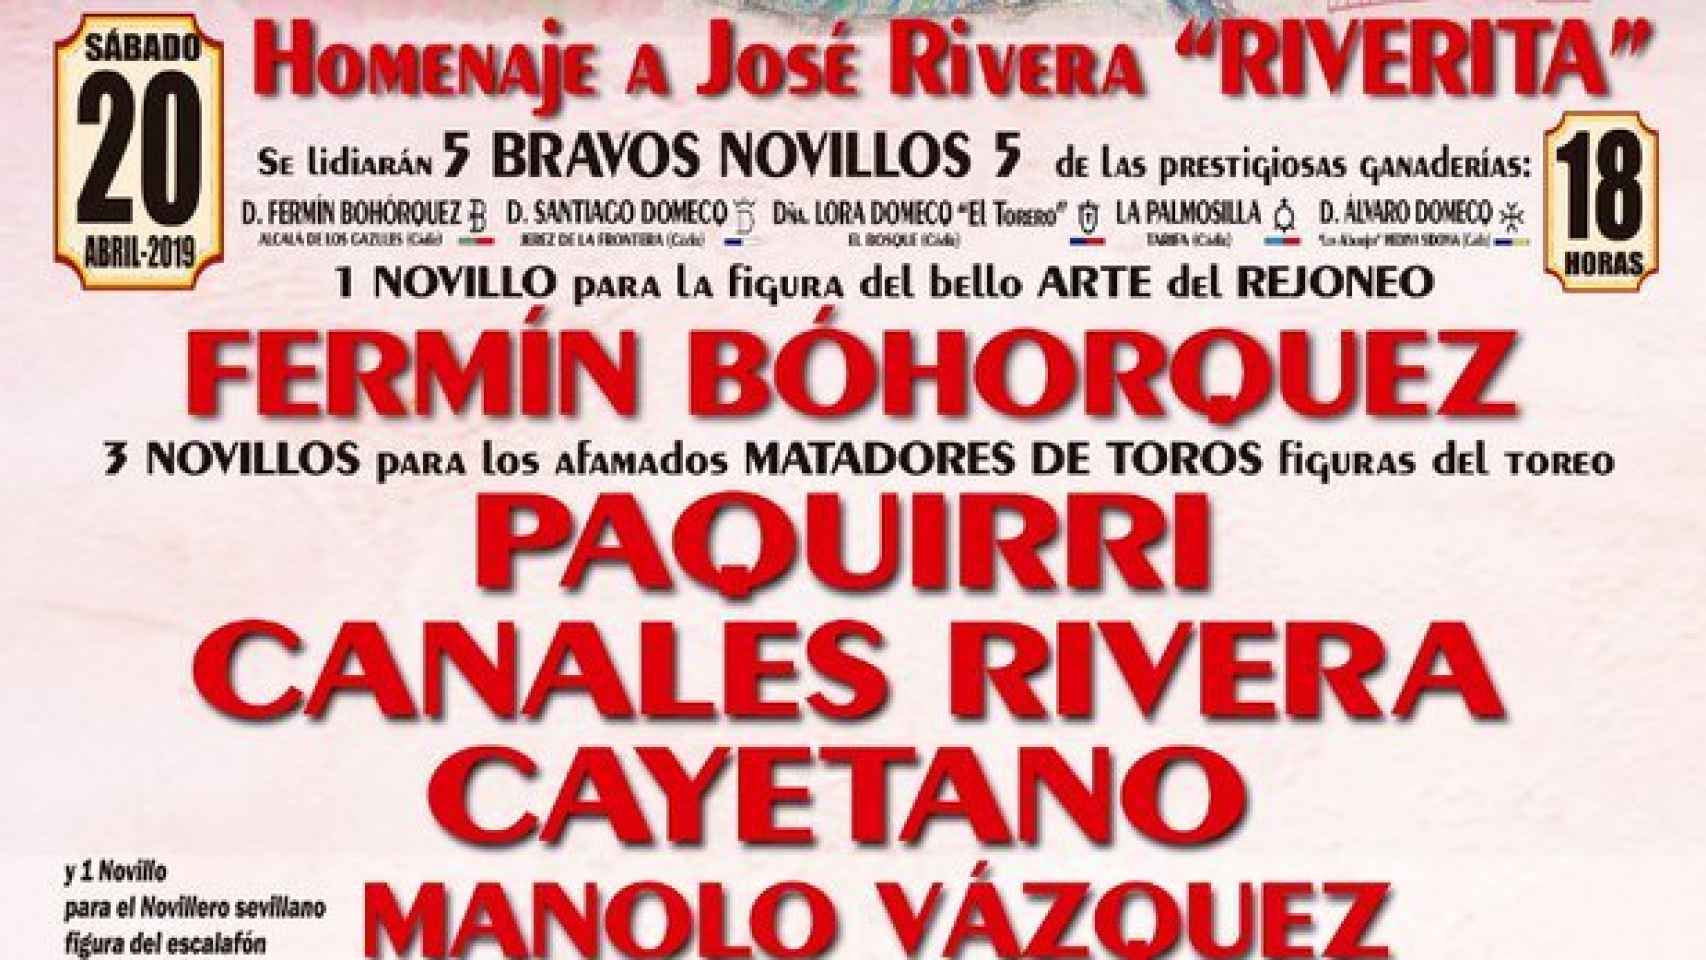 Cartel homenaje a Riverita para el próximo 20 de abril en Zahara de los Atunes.